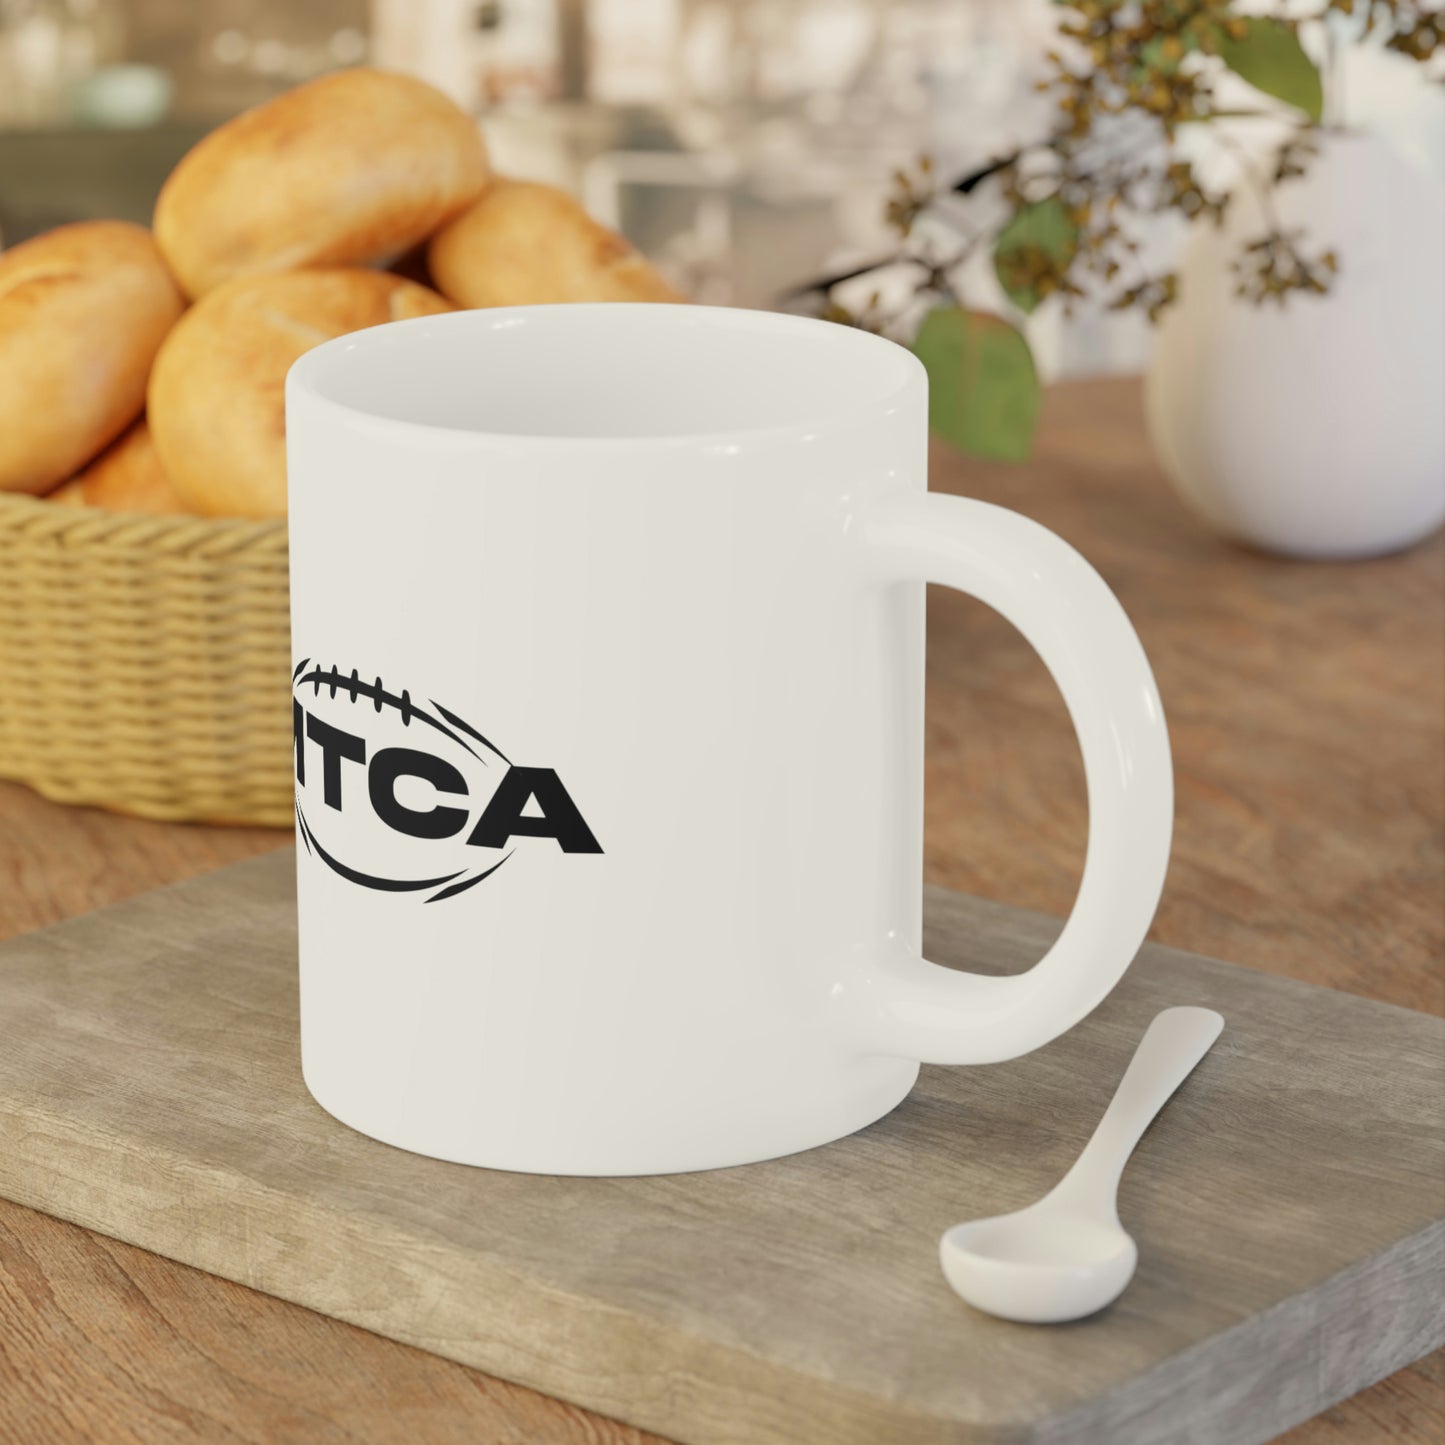 MTCA Ceramic Mugs (11oz\15oz\20oz)